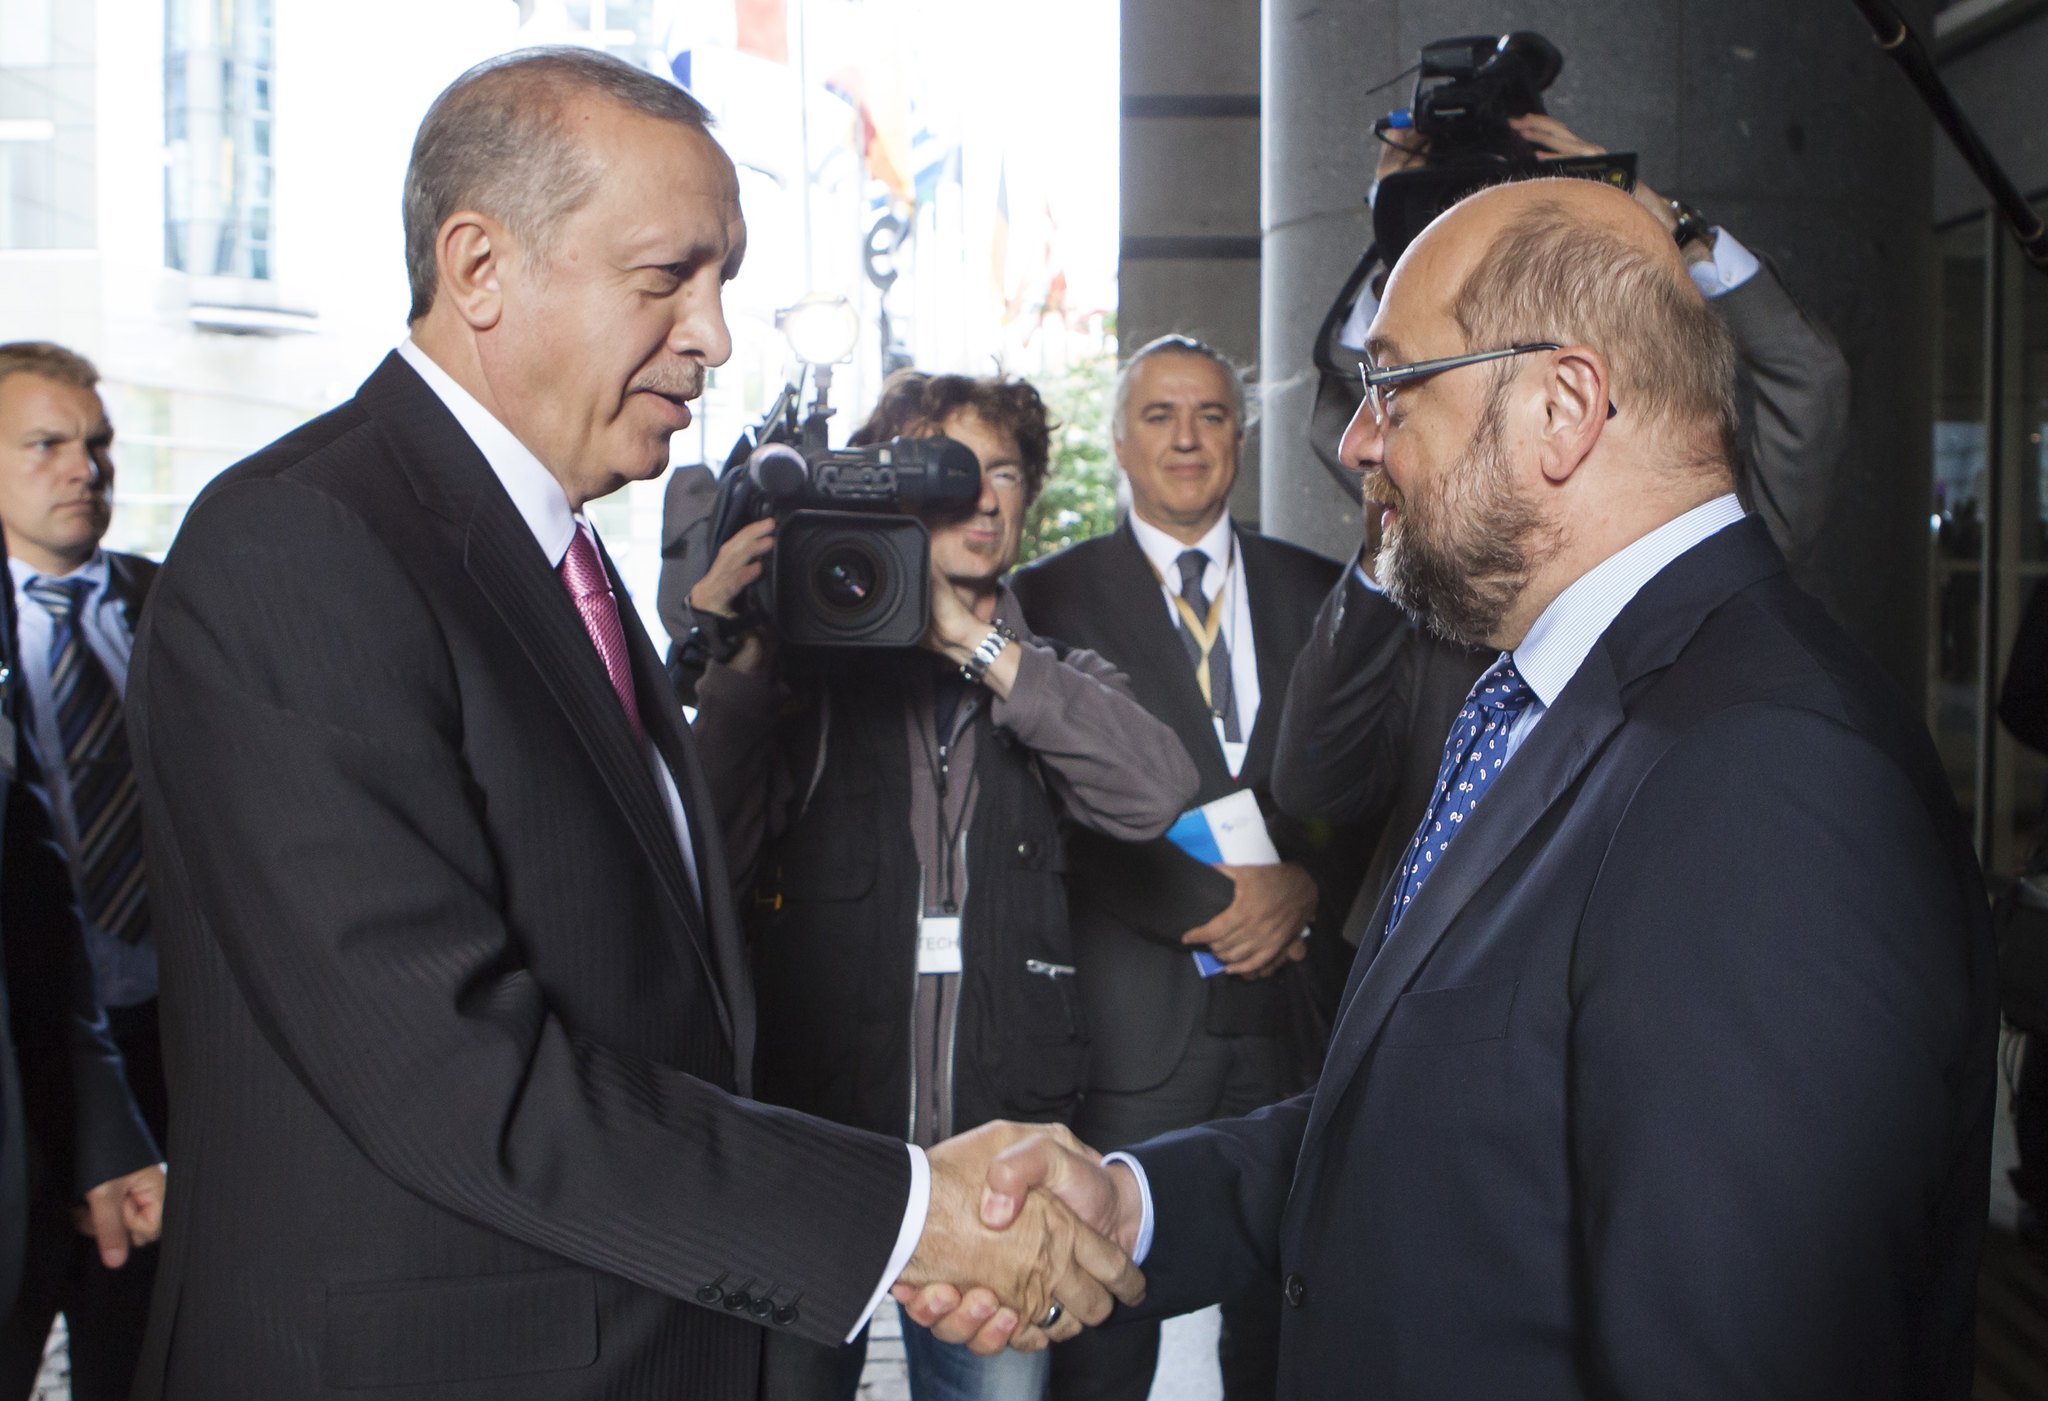 De Turkse president Recep Tayyip Erdoğan met de voorzitter van het Europees Parlement, Martin Schulz, tijdens een bespreking in oktober 2015 om de migratiestromen vanuit Syrië te beheren,